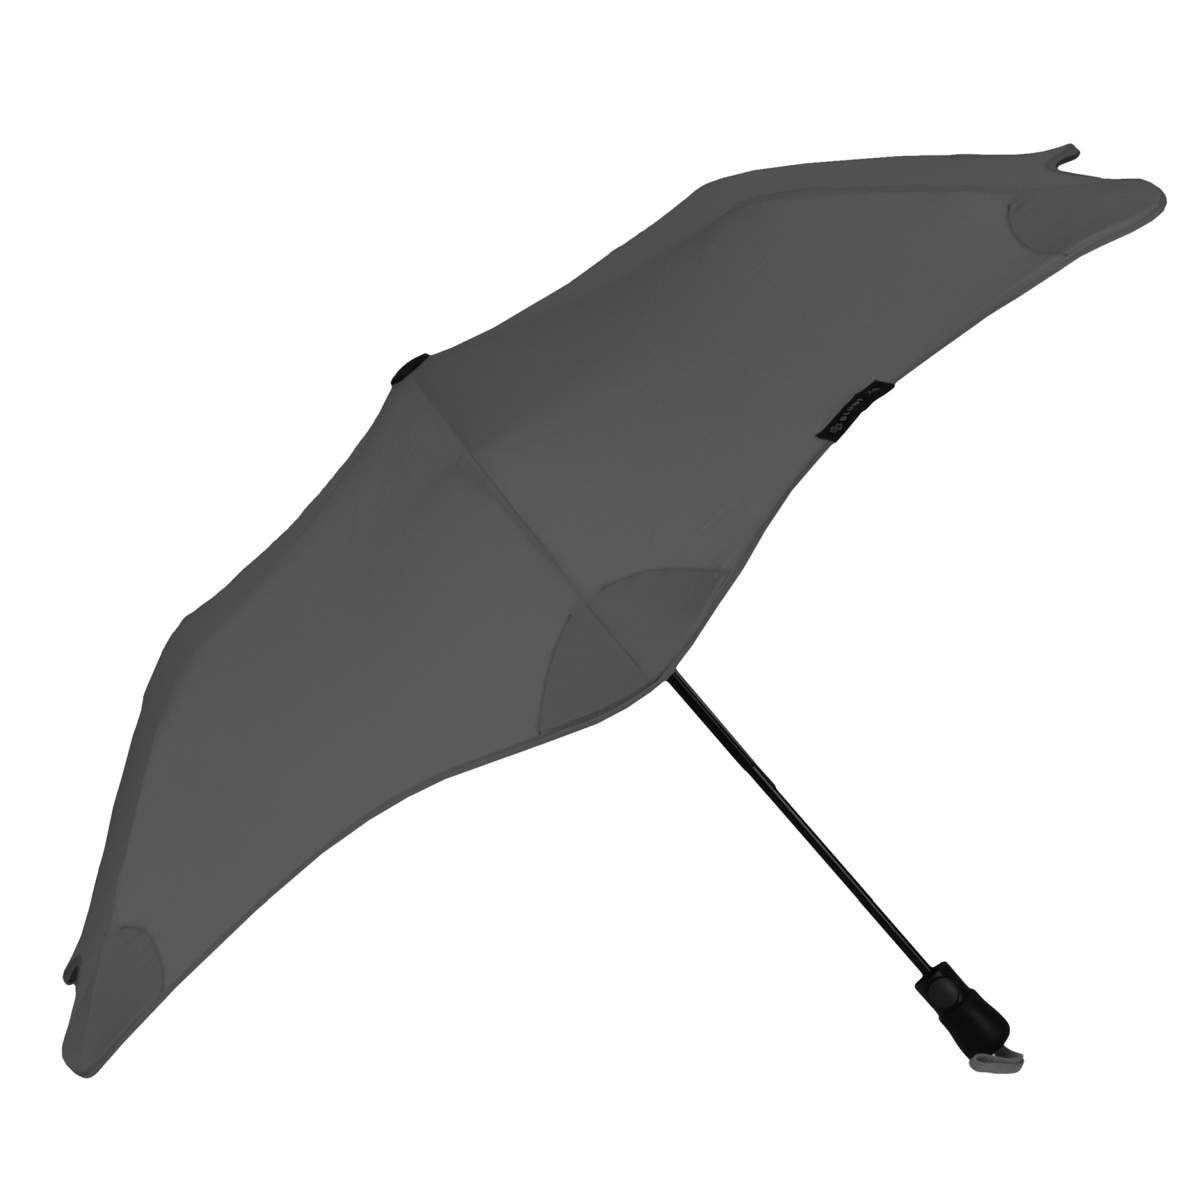 Blunt Taschenregenschirm Metro, Regenschirm, Taschenschirm, für Auto und unterwegs, 96cm Durchmesser dunkelgrau